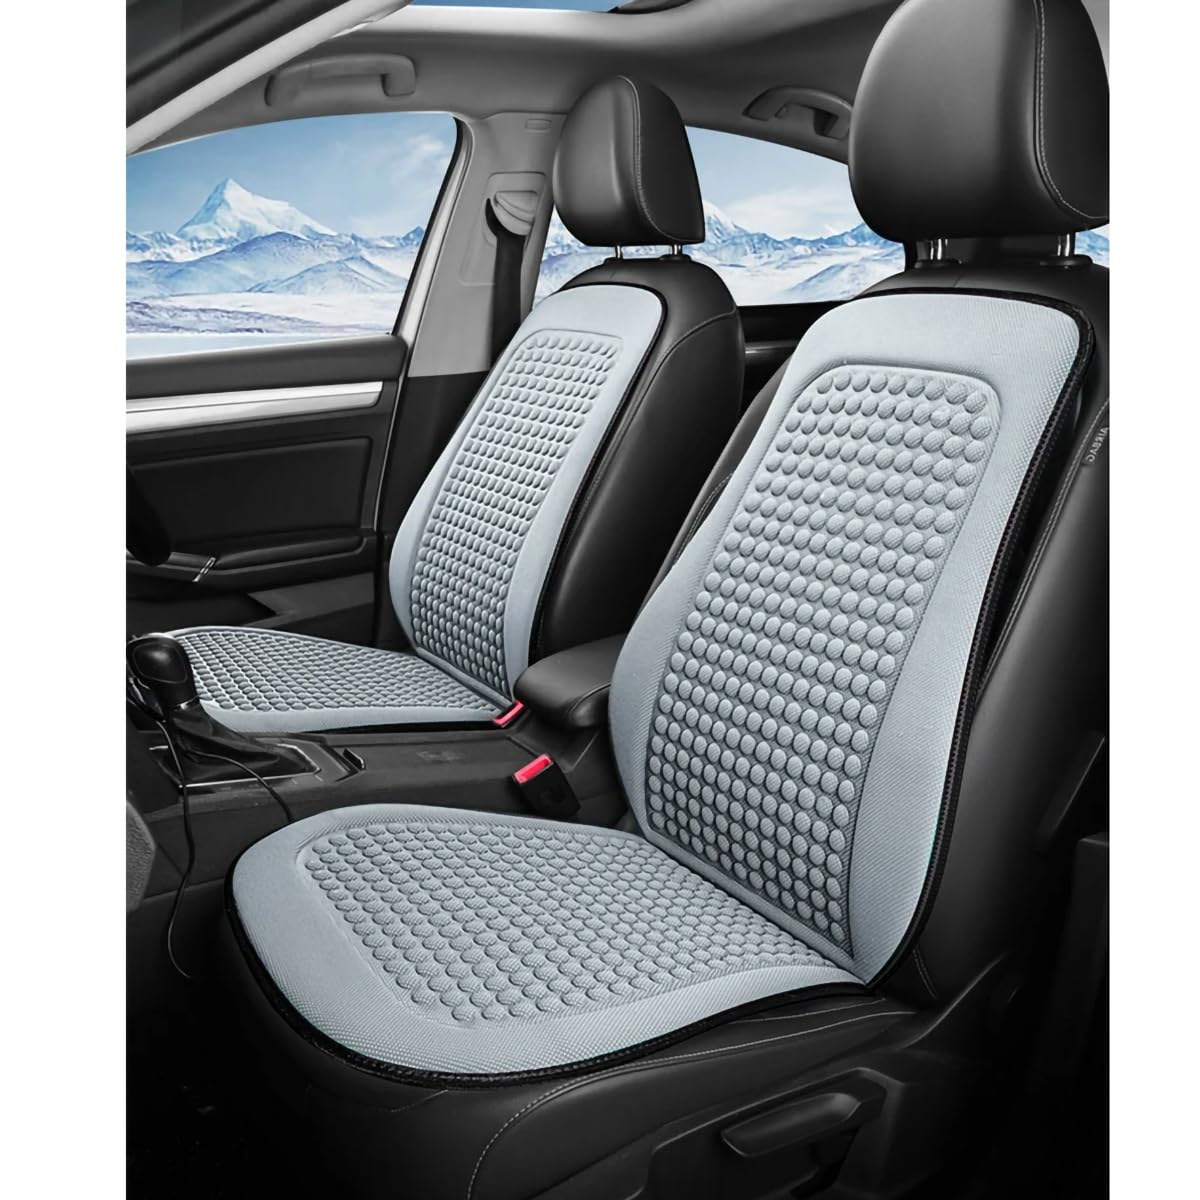 Spulhc Autositzbezug für Hyundai i10 BA Gran Metro Taxi Xcent IA 2014-2019, kühles Sitzkissen aus Eisseide, kühlendes/atmungsaktives Kissen,A-gray-2 set von Spulhc